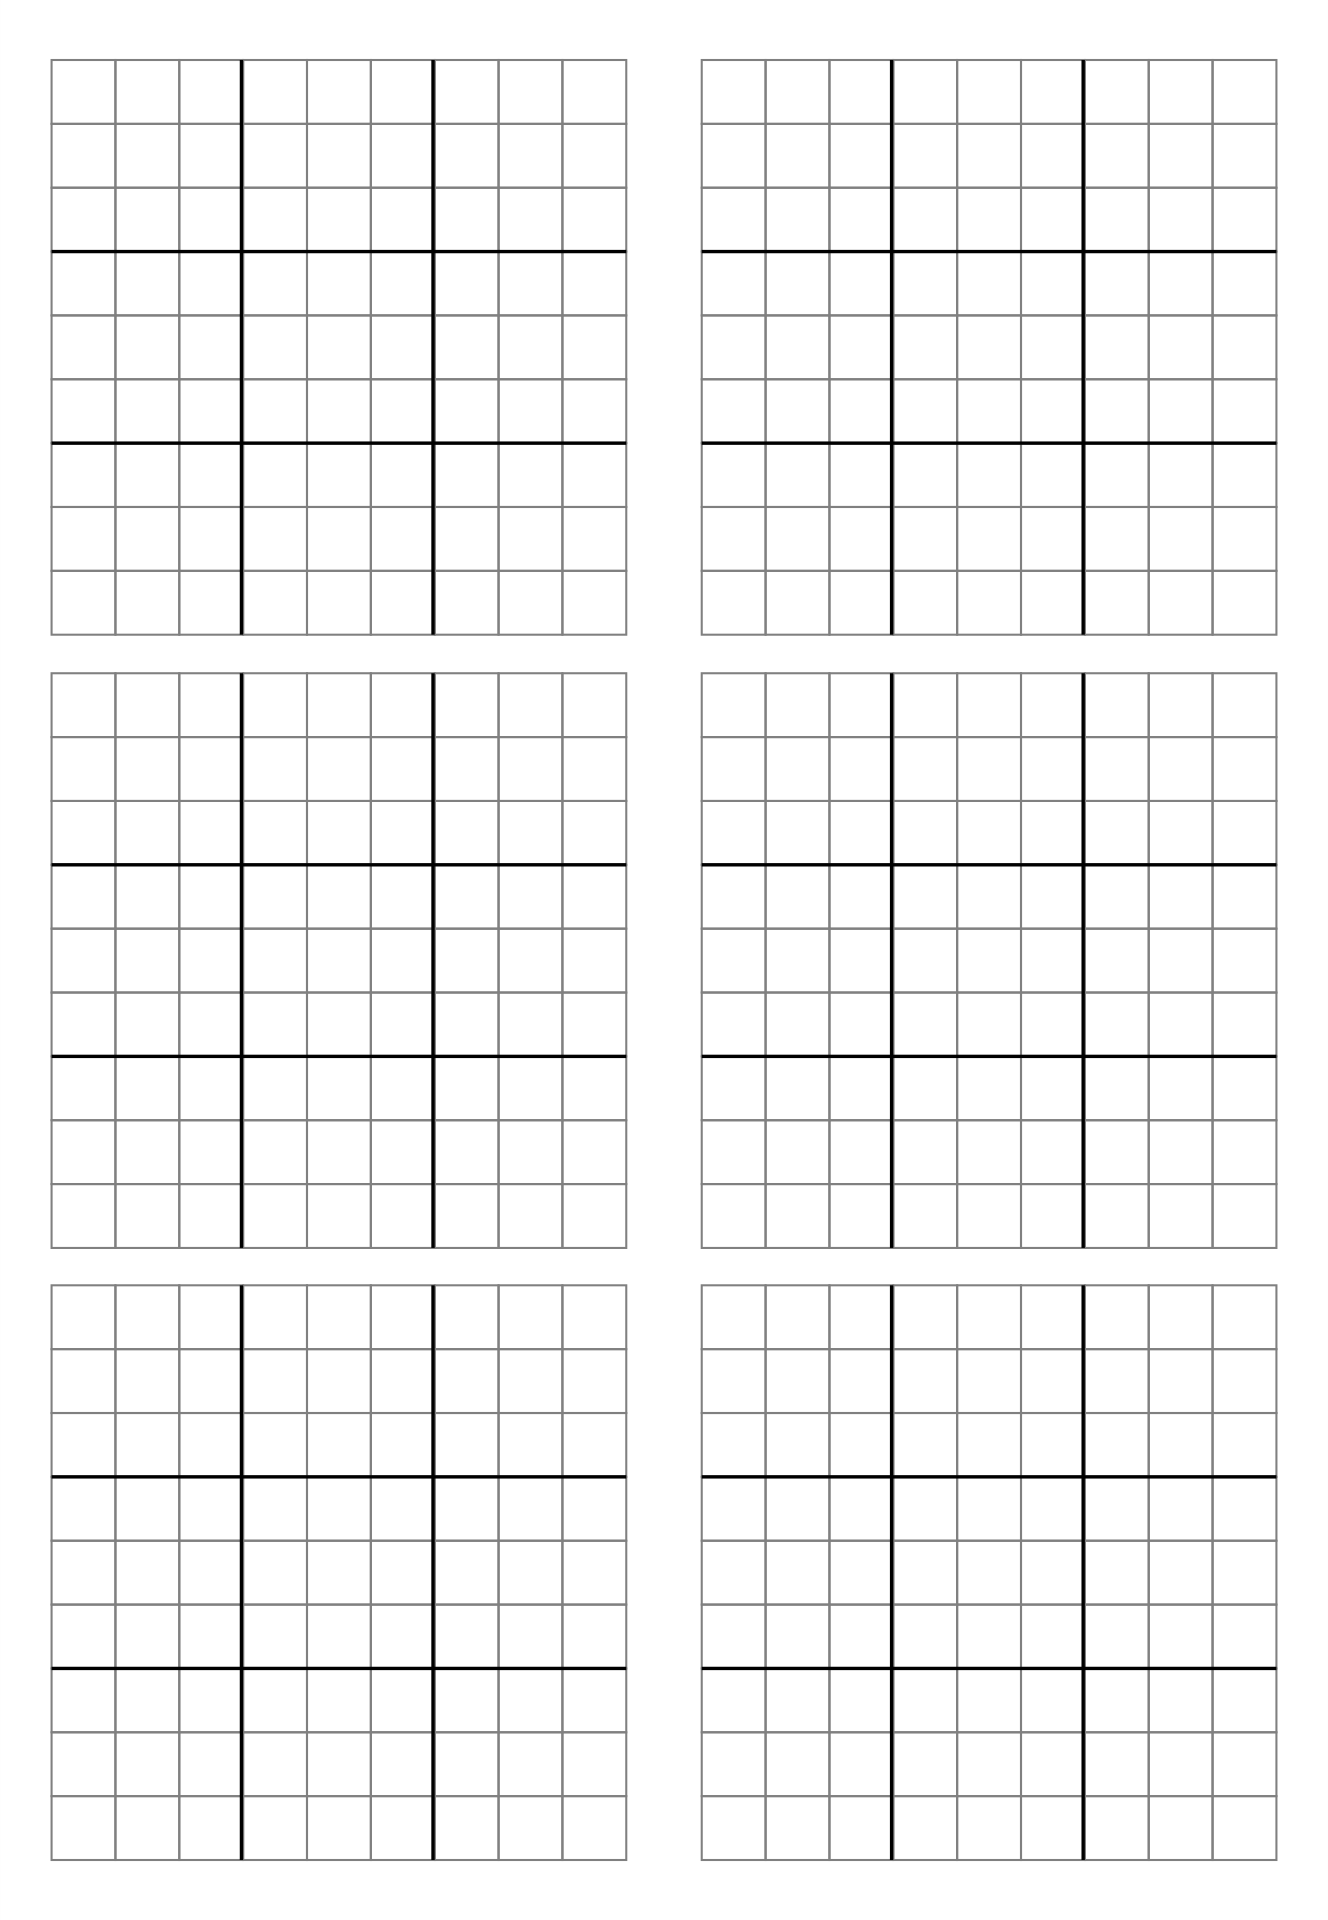 Printable Blank Sudoku Grid Printable Templates